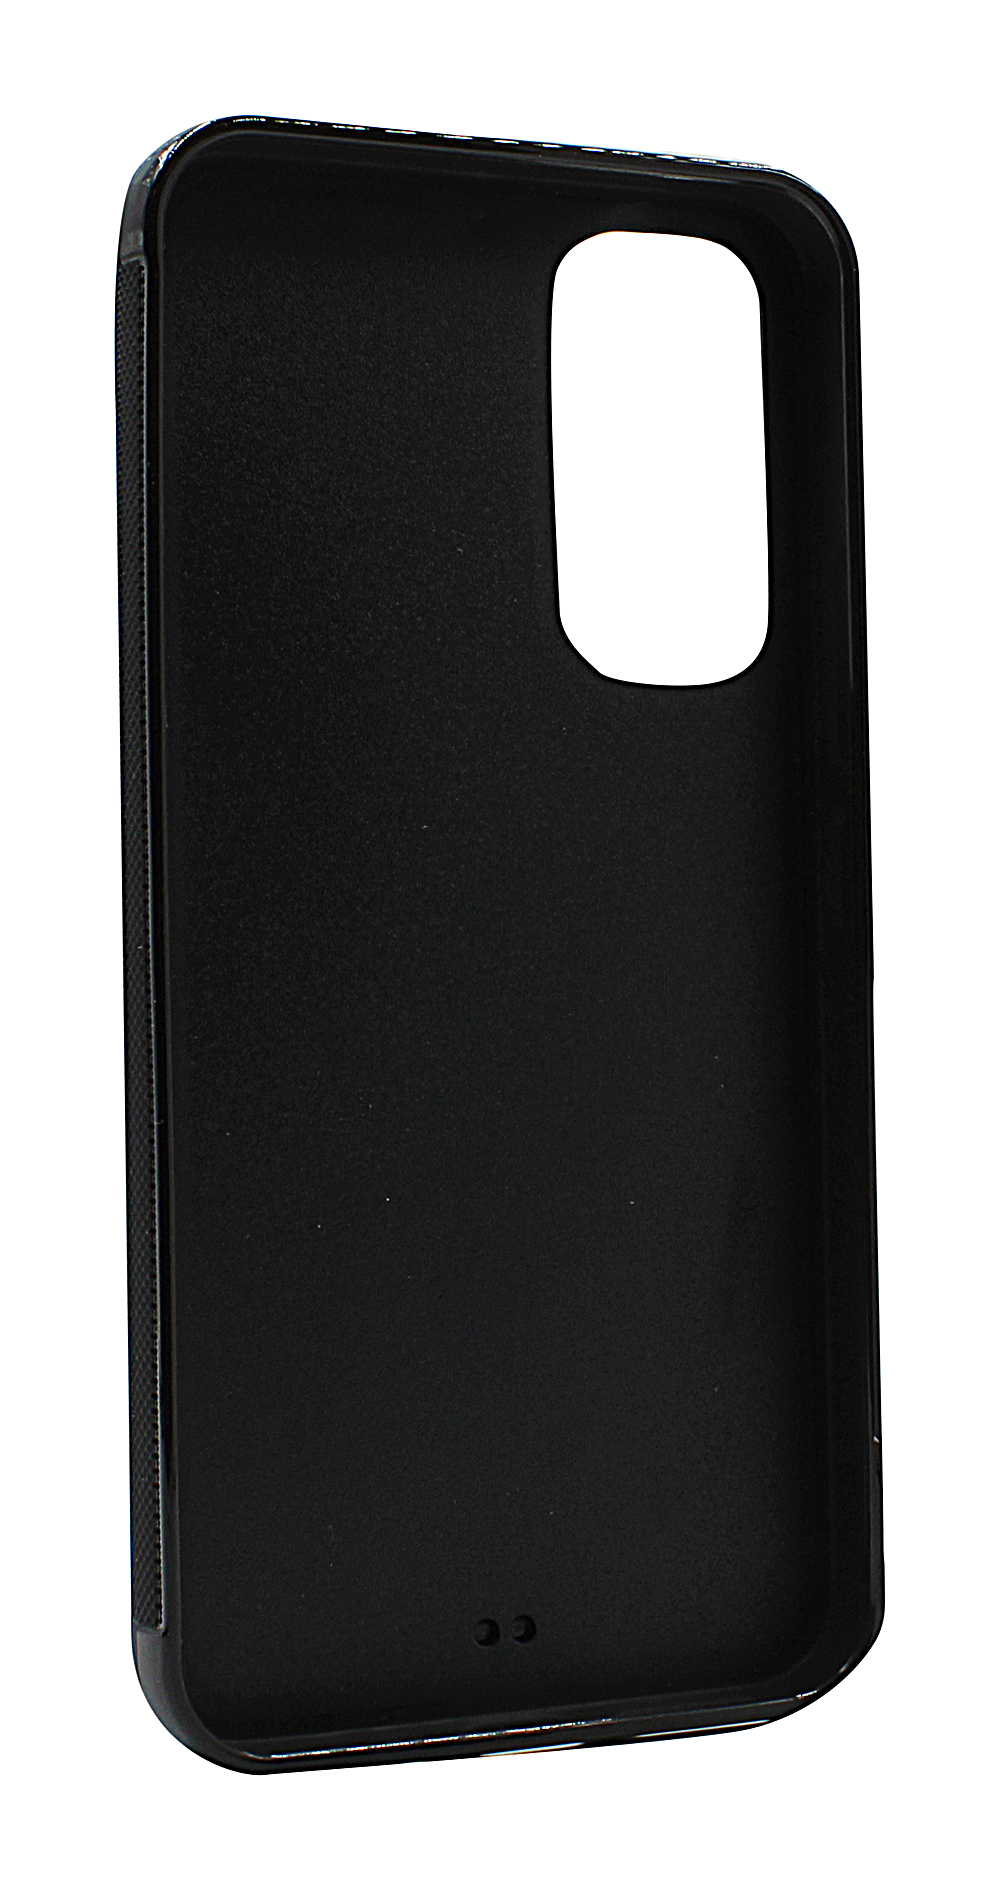 Skimblocker Magnet Wallet Samsung Galaxy A54 5G